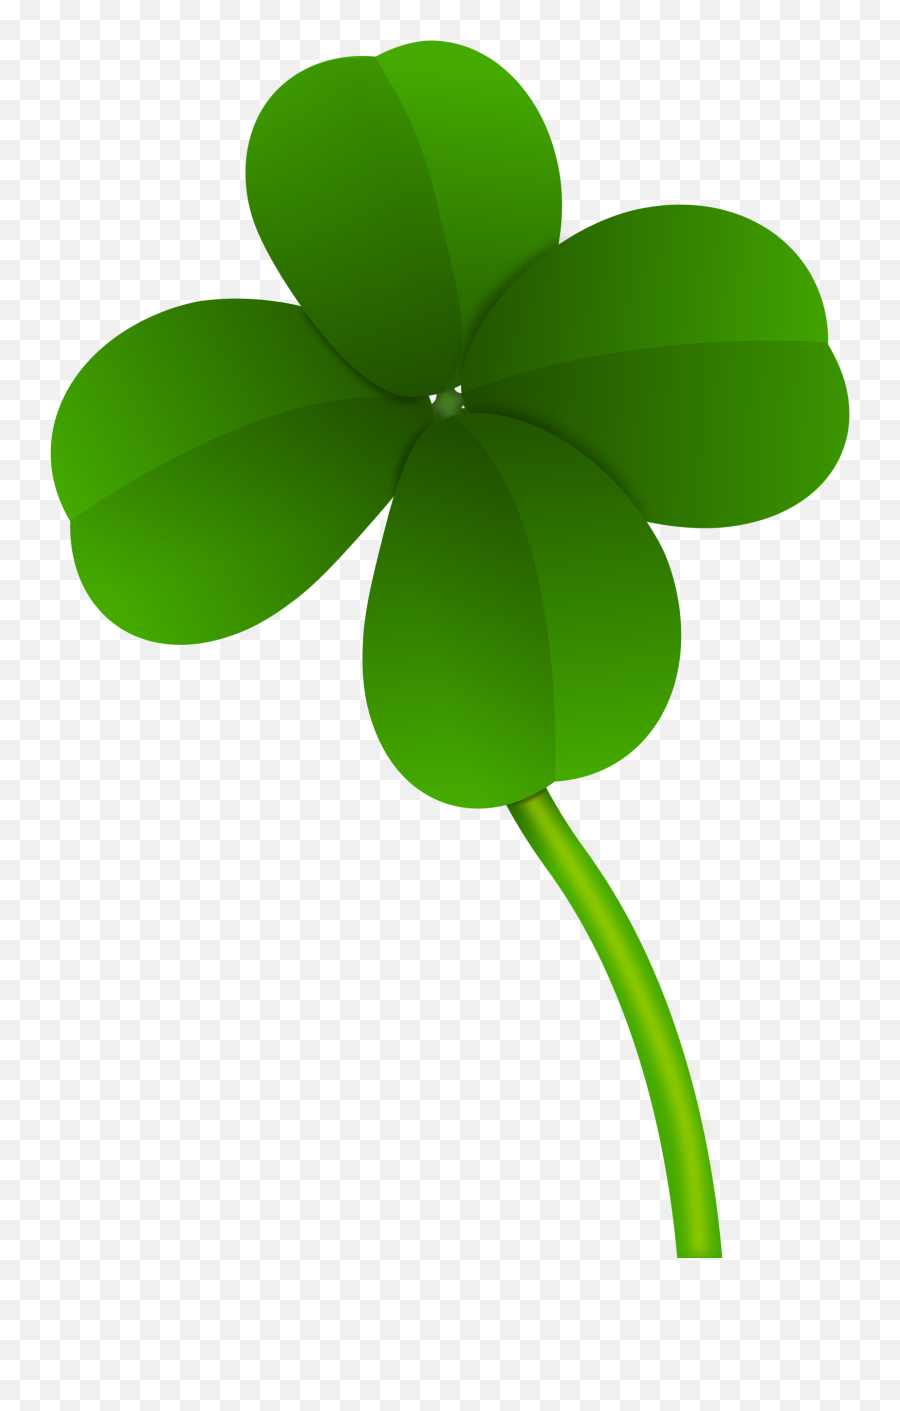 Green Clover Png Image - Four Leaf Clover Transparent Background Emoji,Three Leaf Clover Emoji